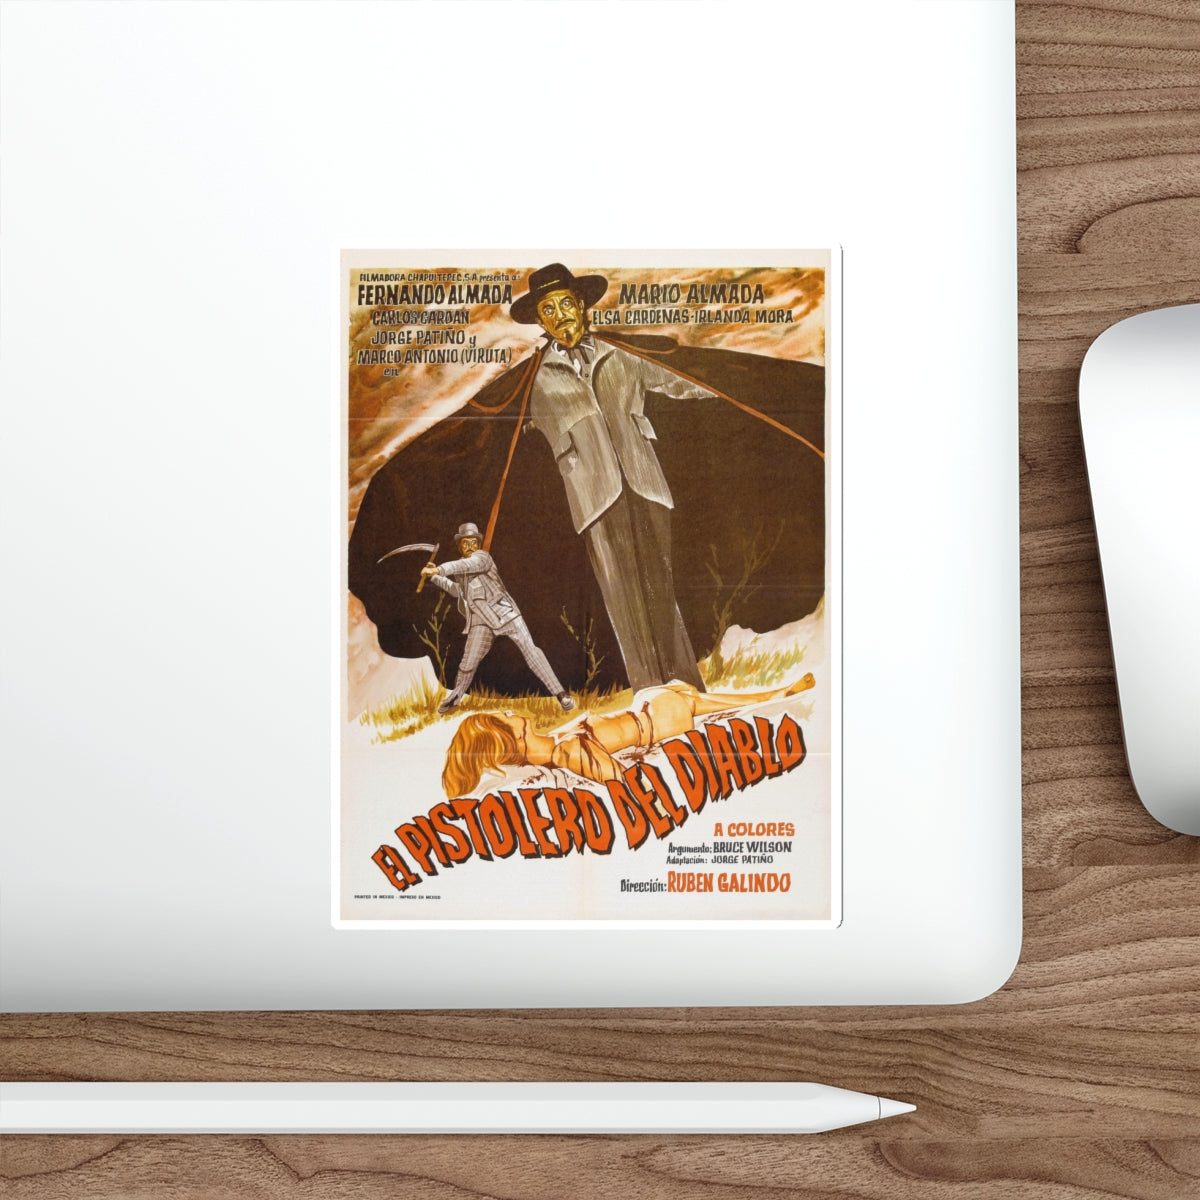 THE DEVIL'S GUNMAN 1974 Movie Poster STICKER Vinyl Die-Cut Decal-The Sticker Space